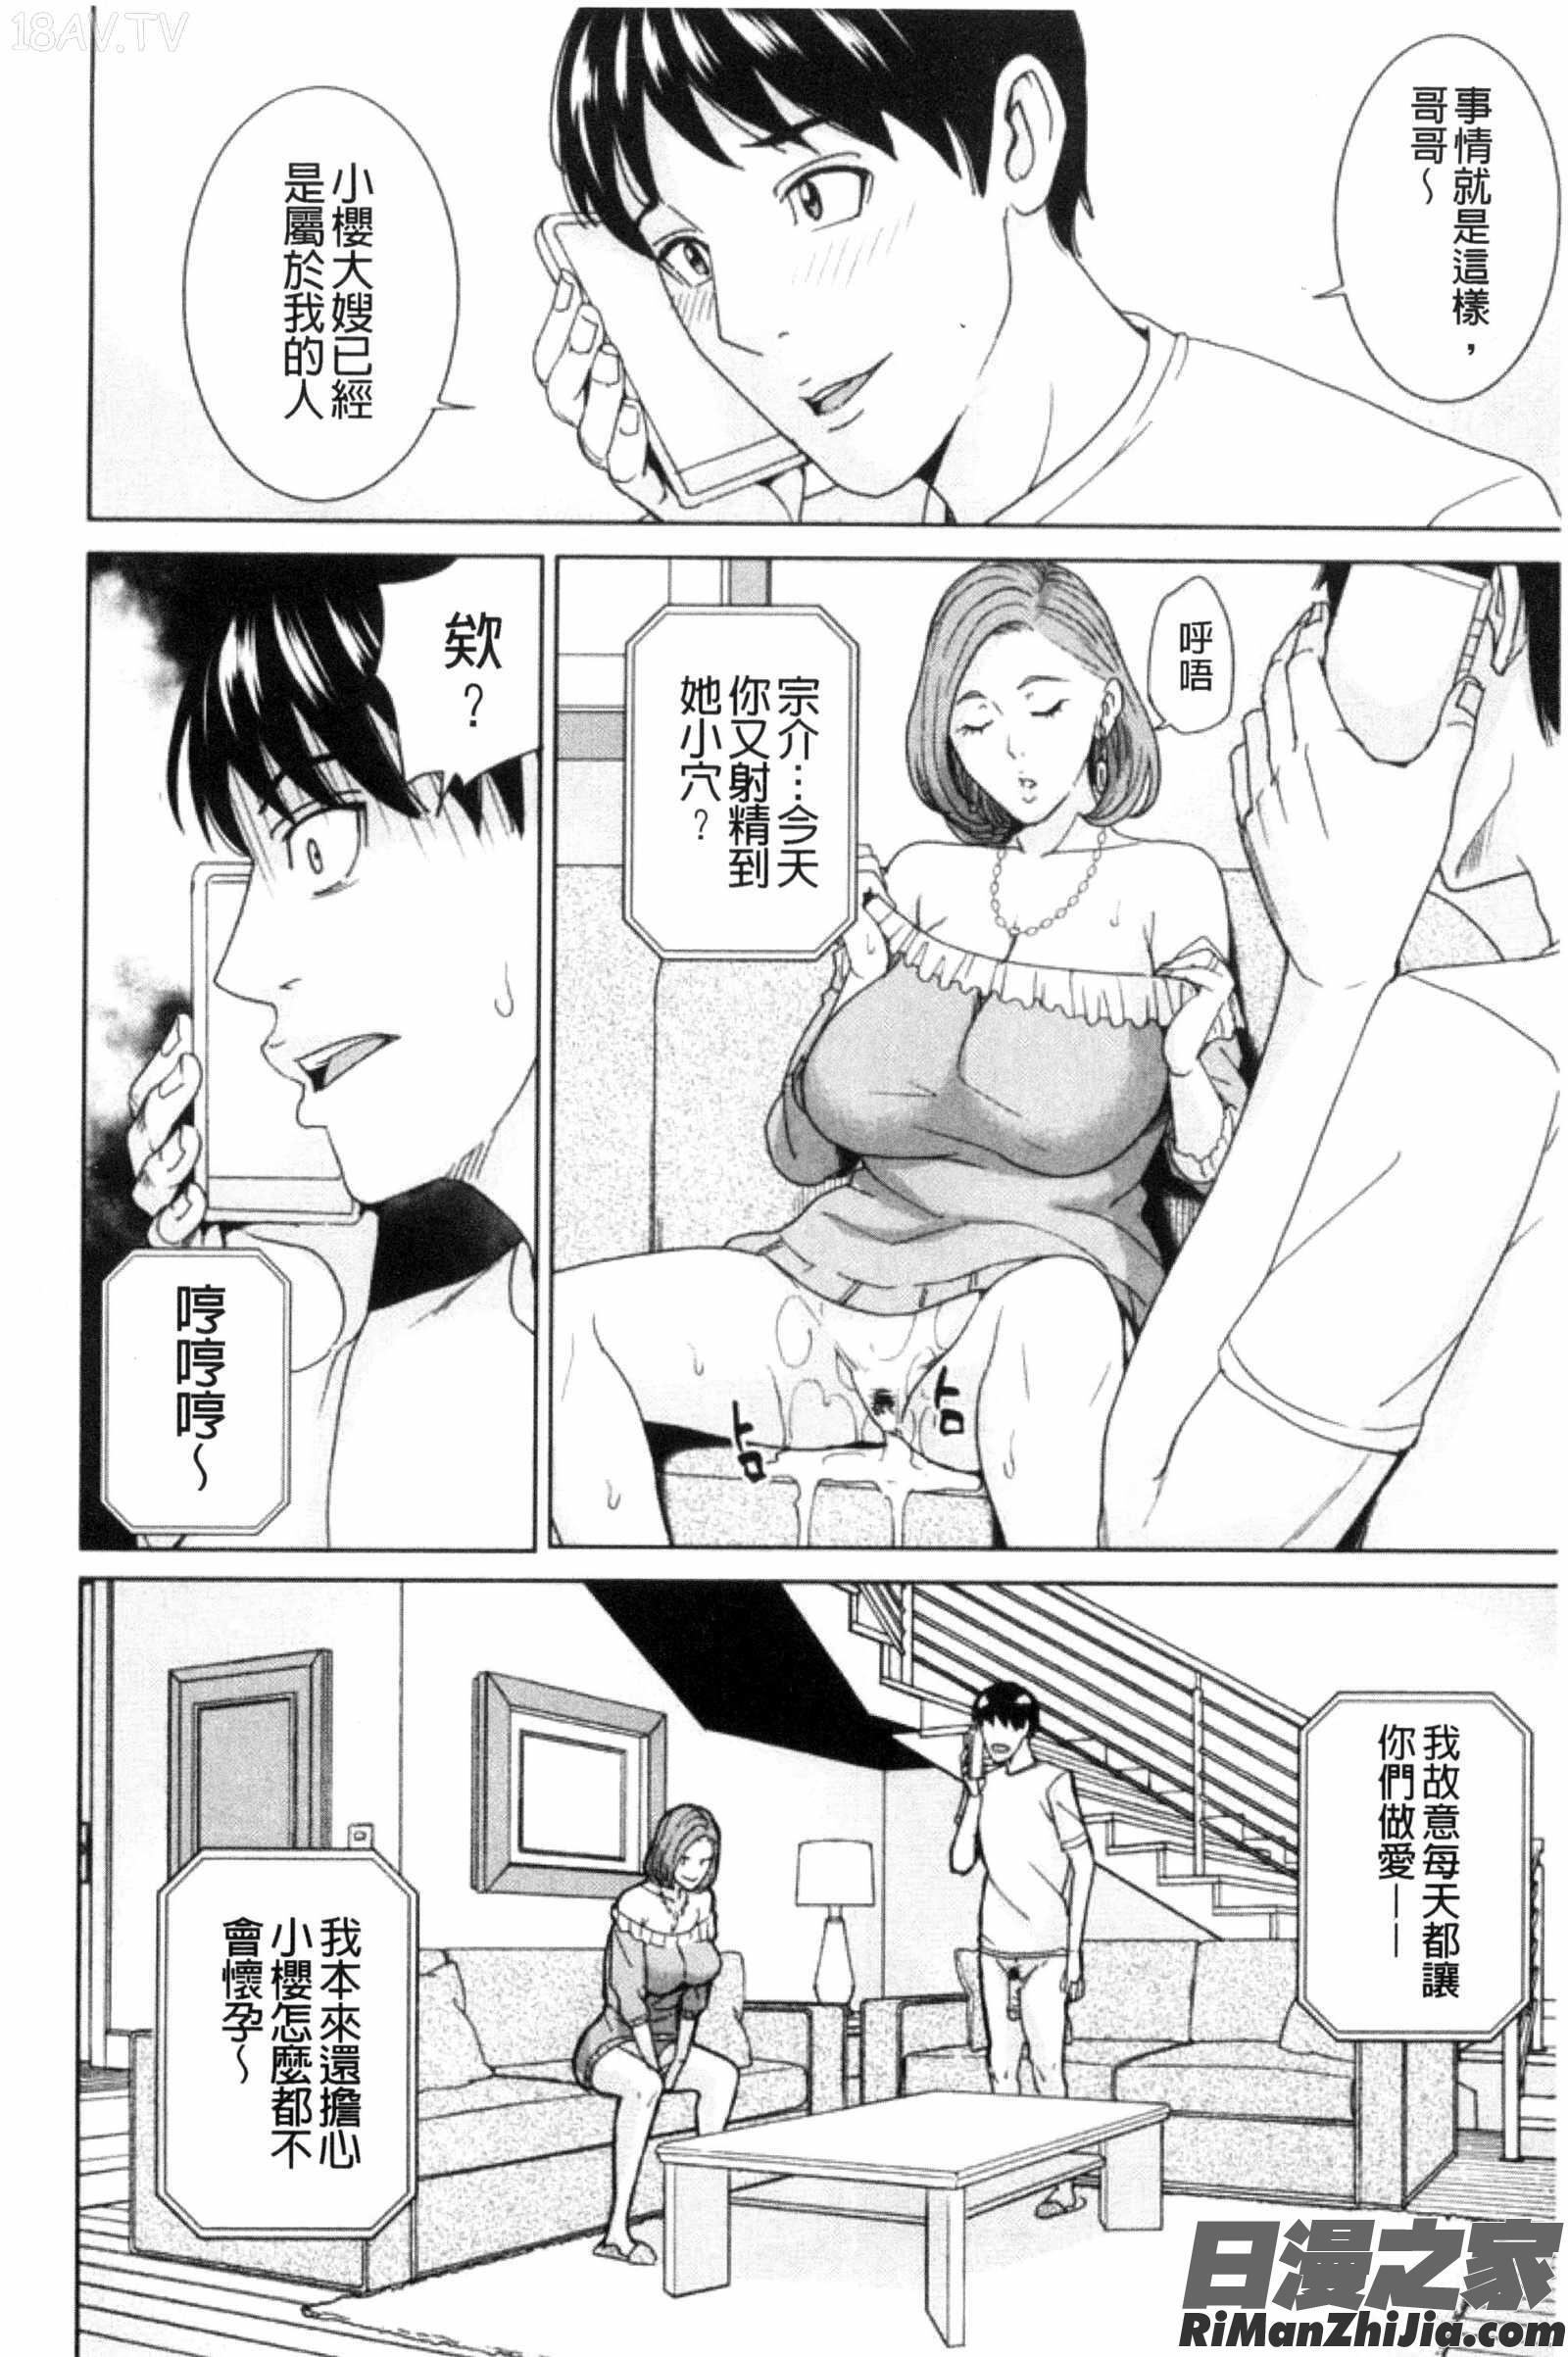 兄嫂淫蕩女性生活_兄嫁ビッチライフ漫画 免费阅读 整部漫画 51.jpg